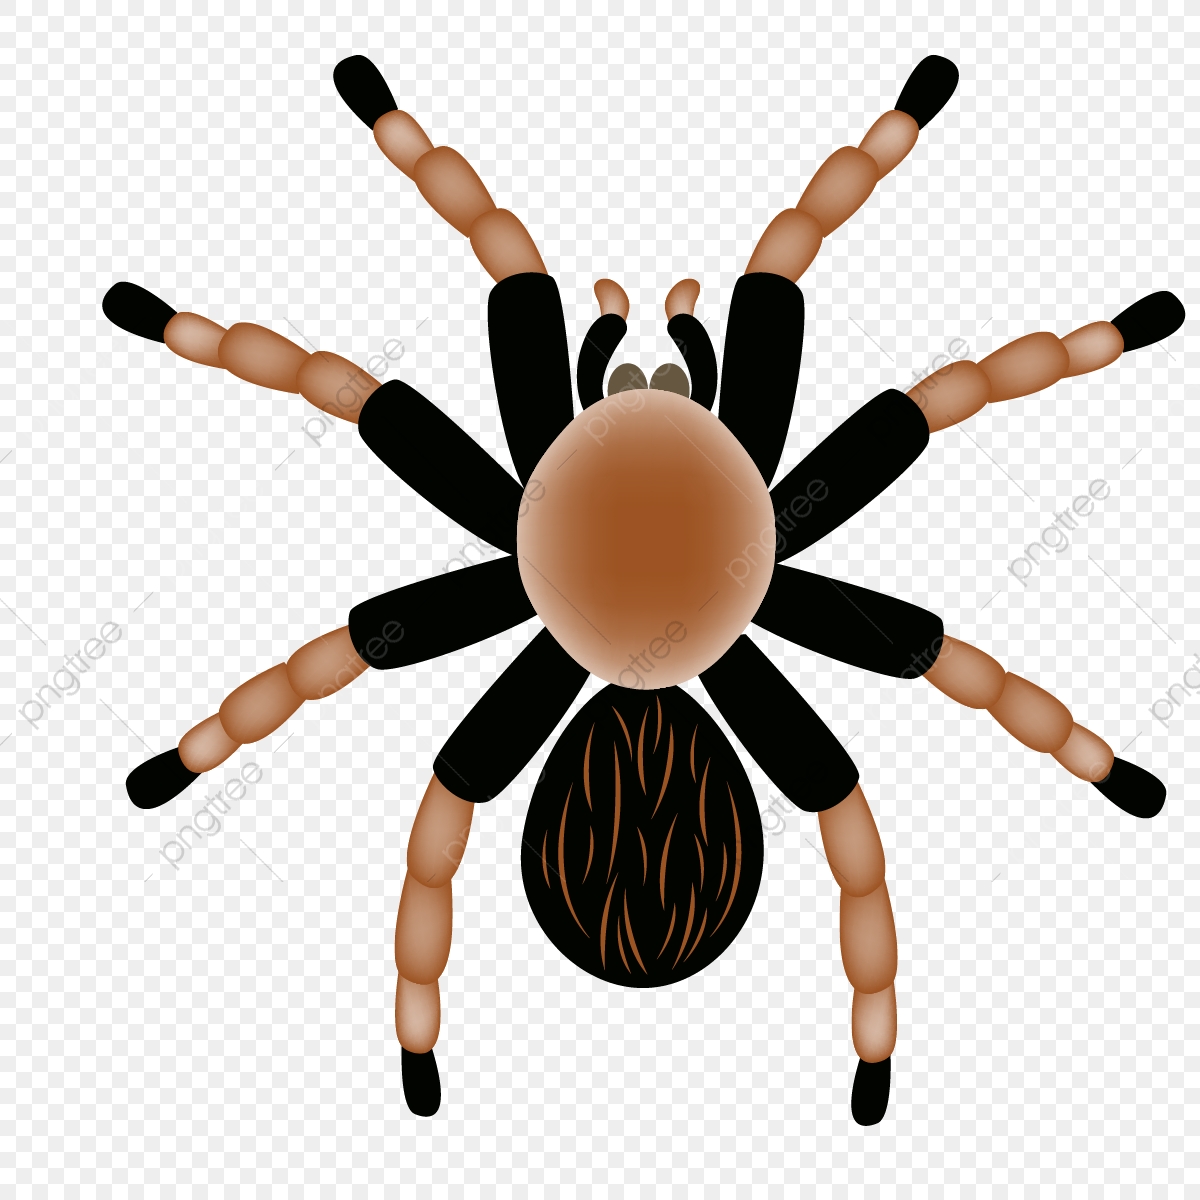 spider clipart tarantula